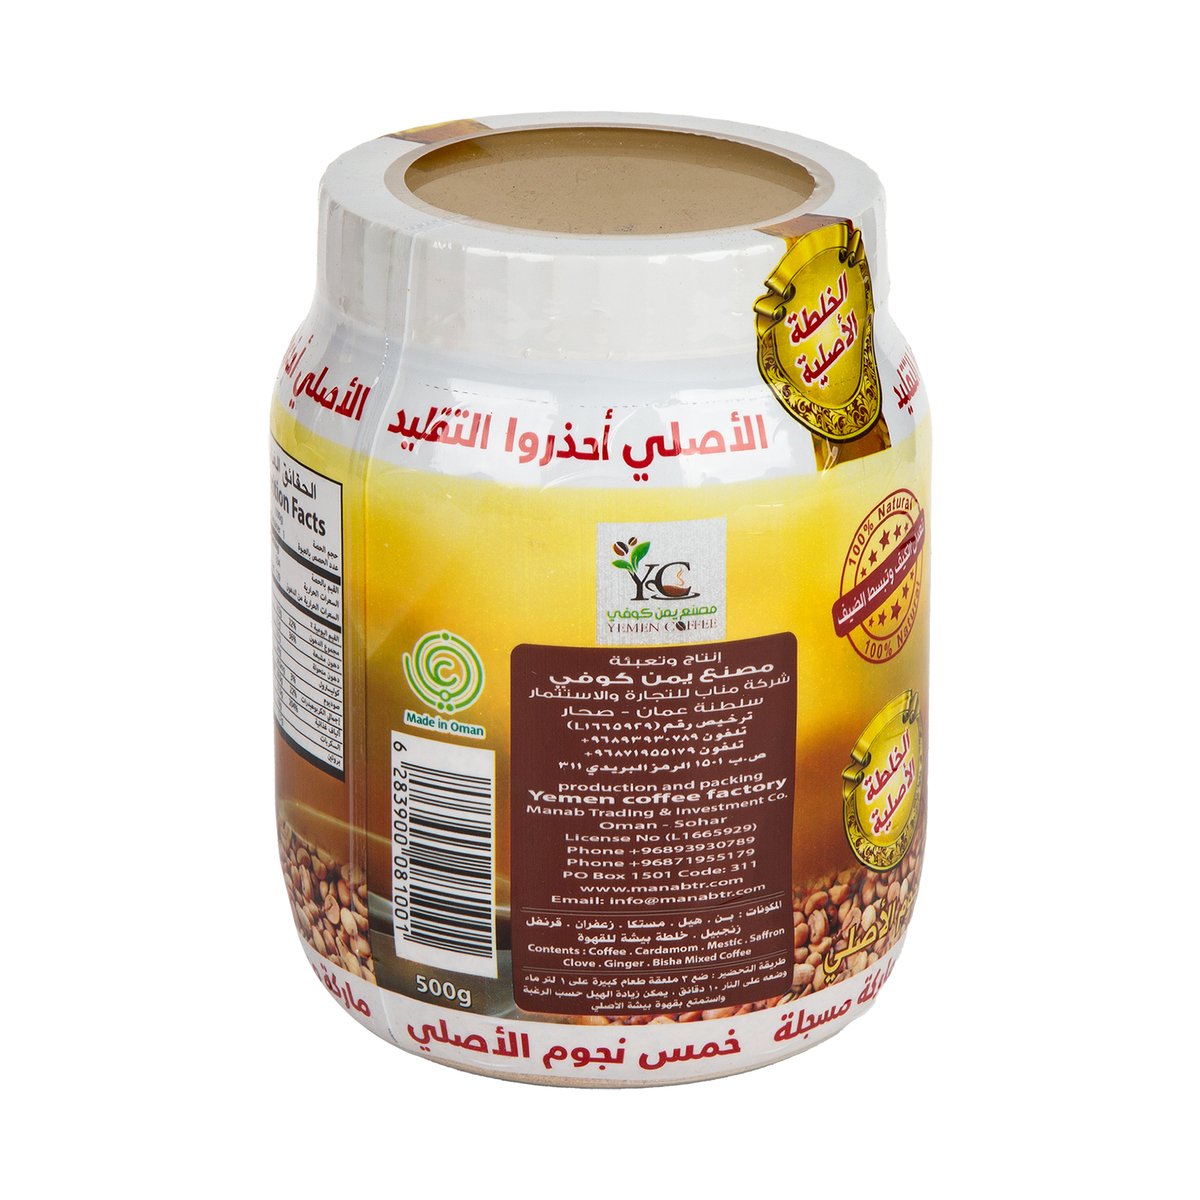 Bisha Arabic Coffee 500 g